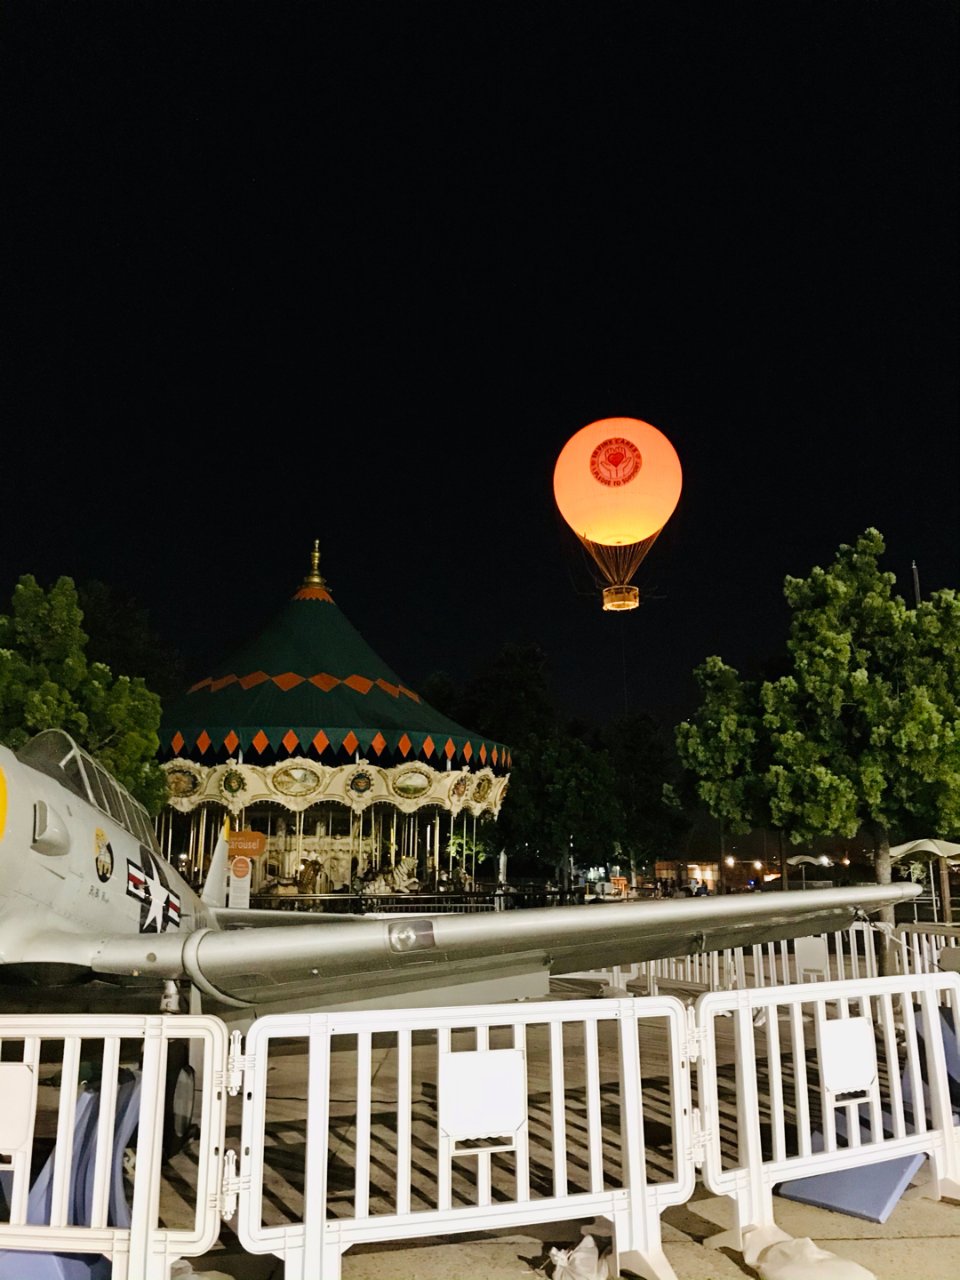 尔湾大公园的热气球免费体验...